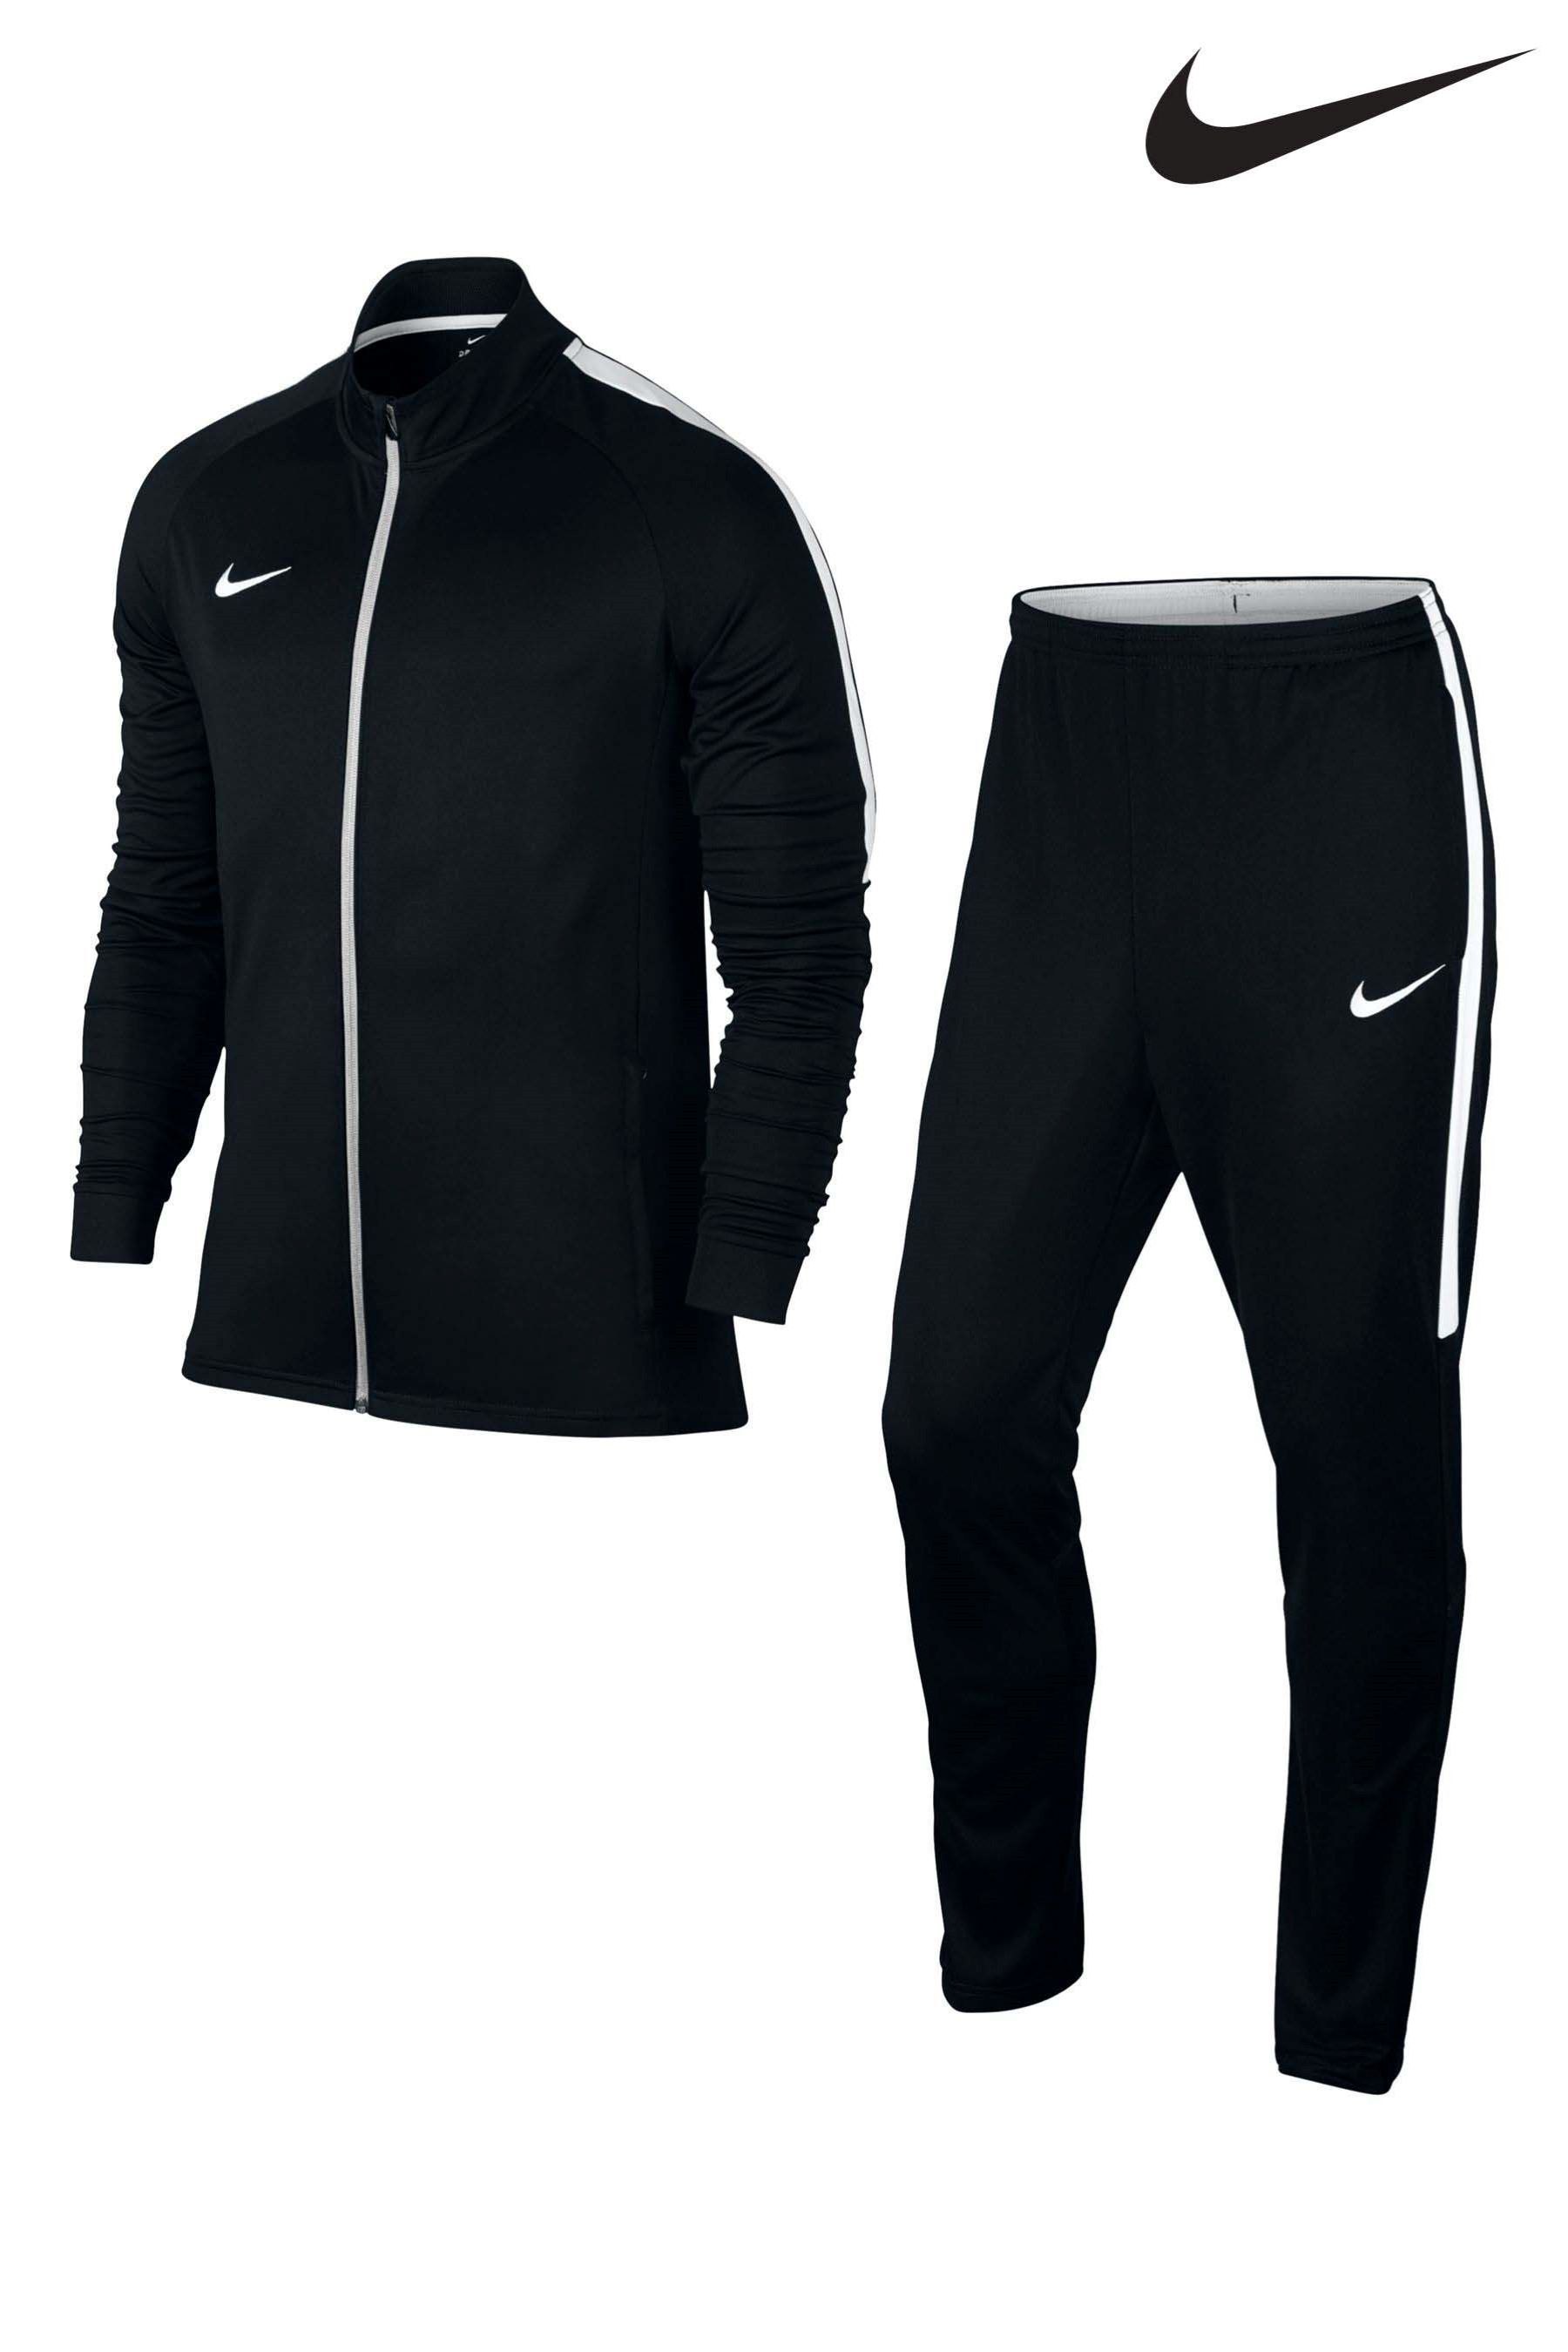 Спортивный костюм m. Спортивный костюм Nike Dry Academy. Nike Dry костюм. Nike Academy Tracksuit Mens. Спортивный костюм мужской Nike Academy.